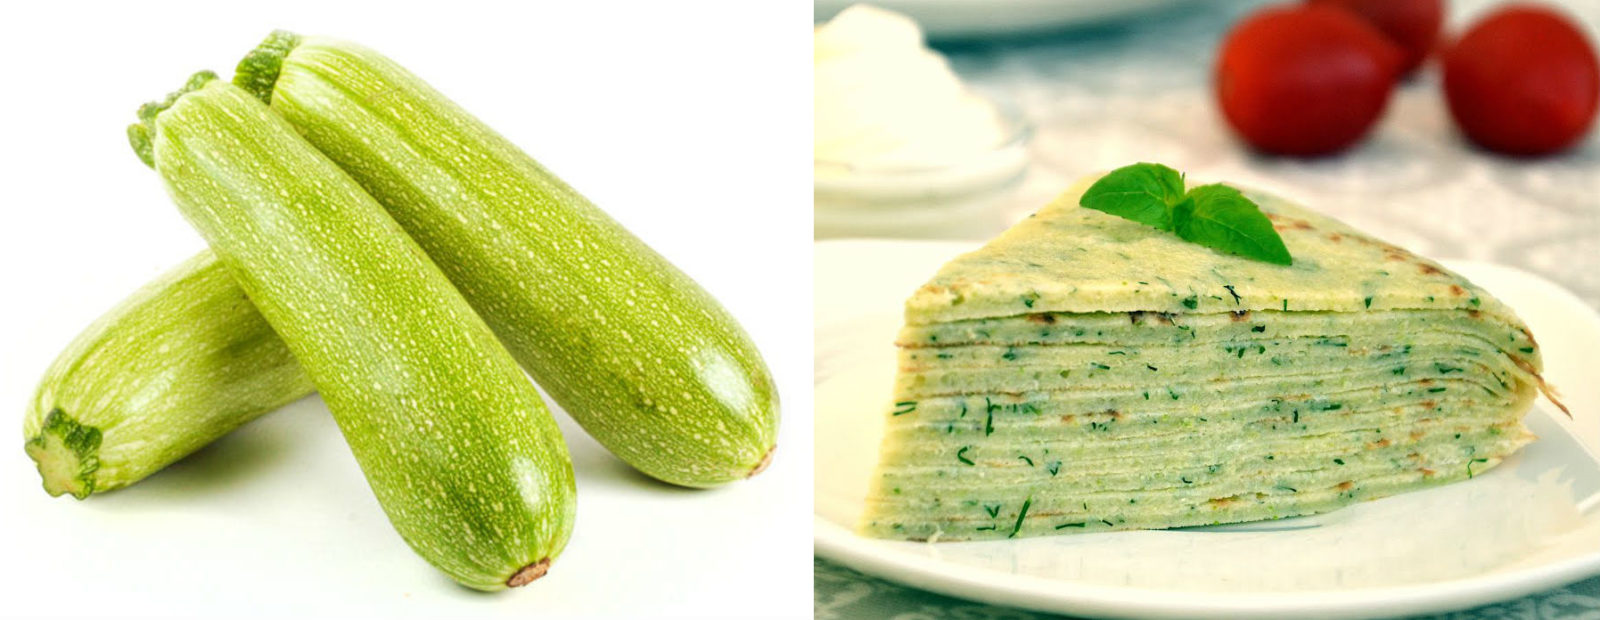 Как полюбить кабачки еще больше: рецепт блинного кабачкового торта на обед